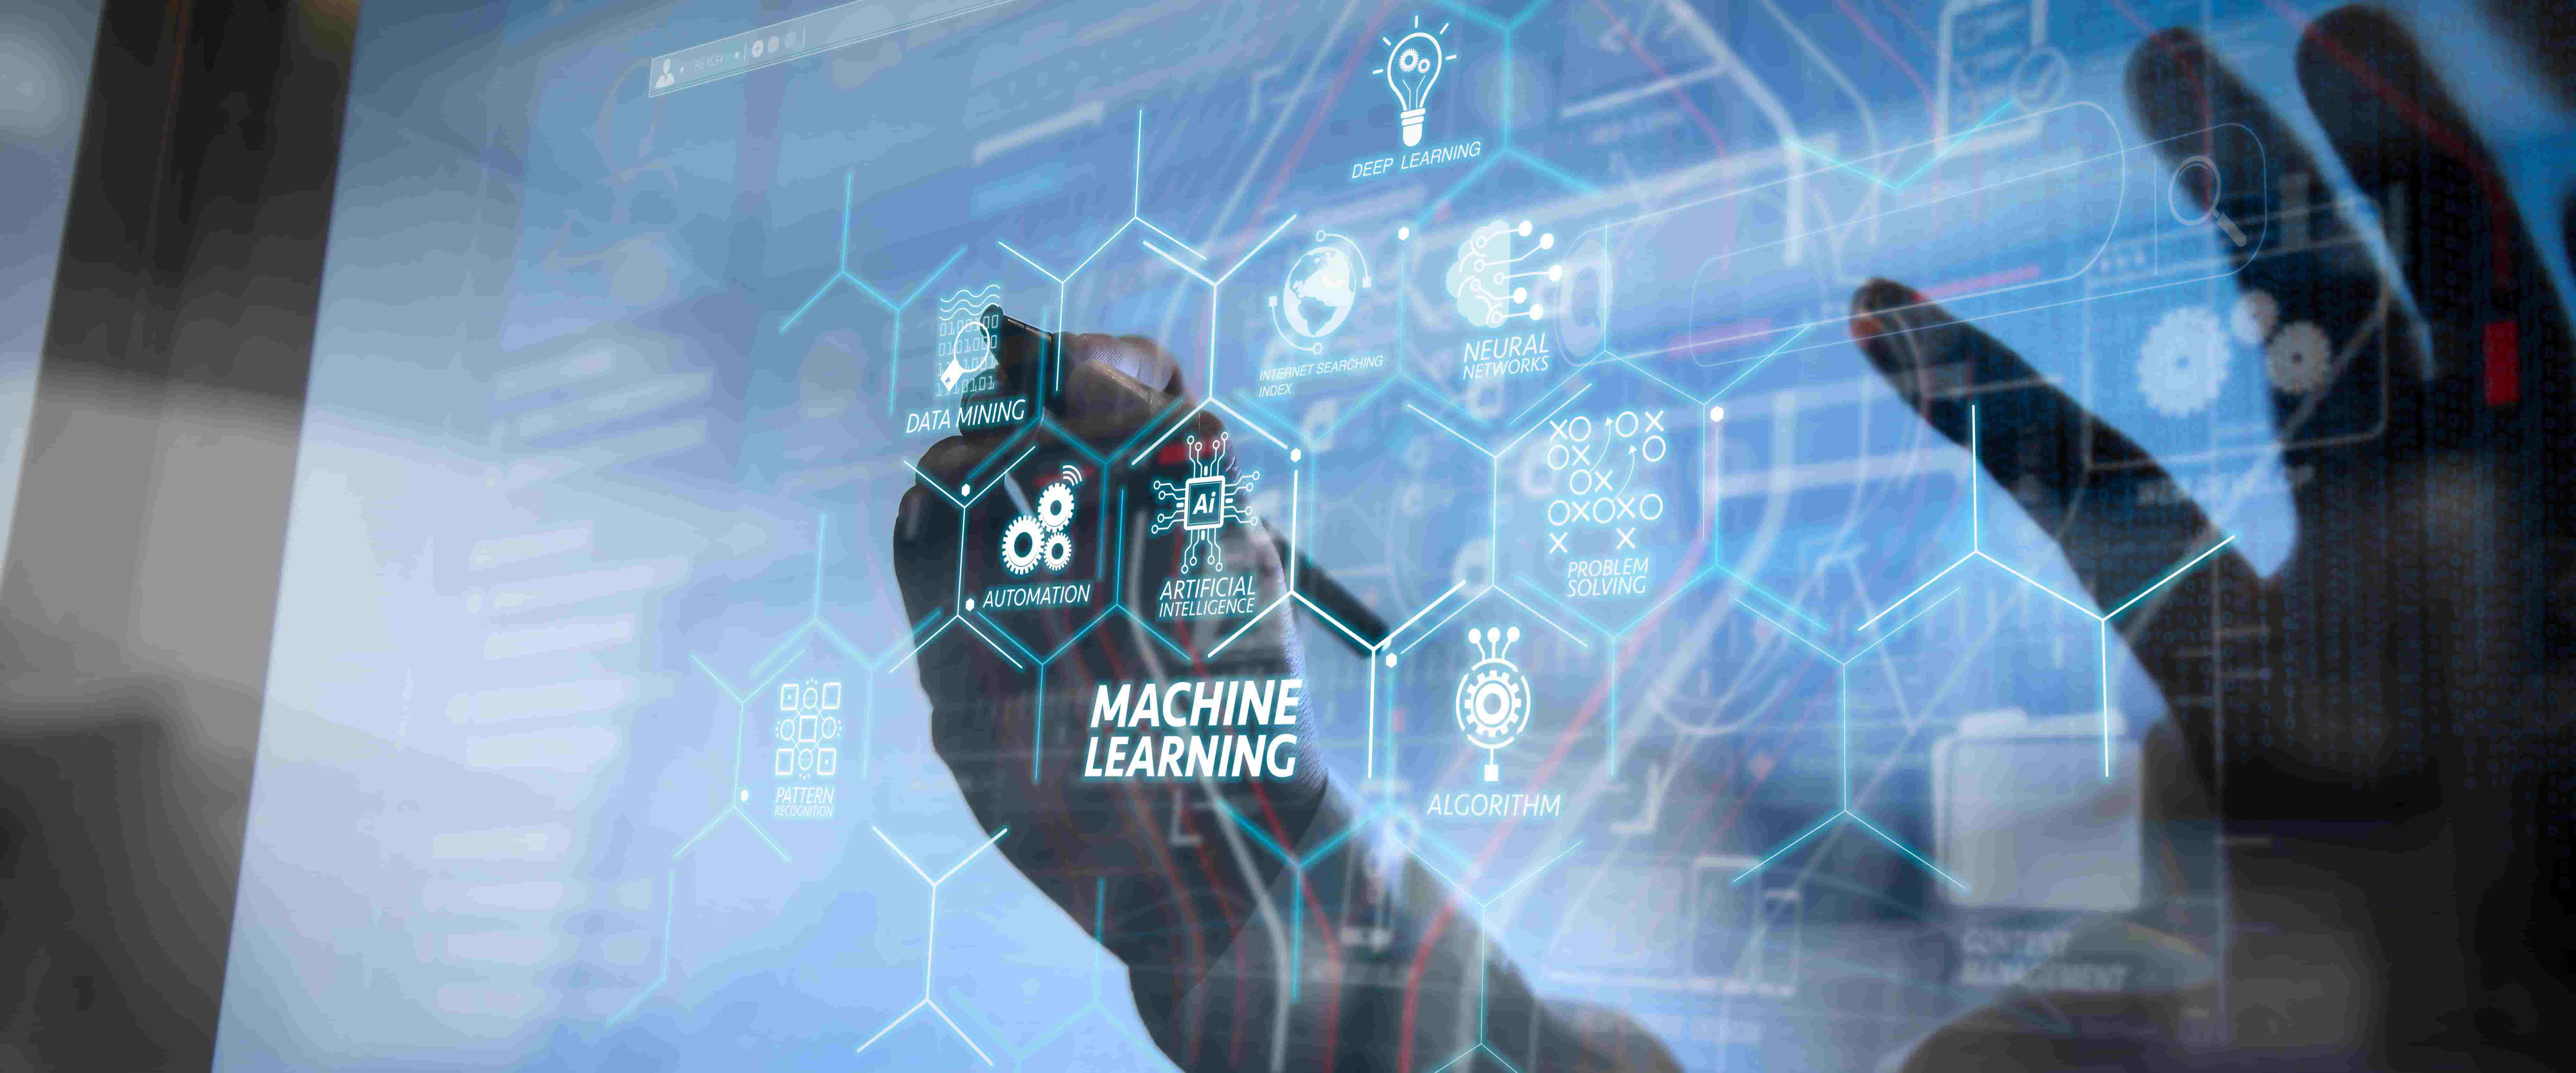 图片展示了一位人士在触摸带有多个技术和数据图标的透明屏幕，中心为“Machine Learning”字样，体现了现代科技与人机交互。